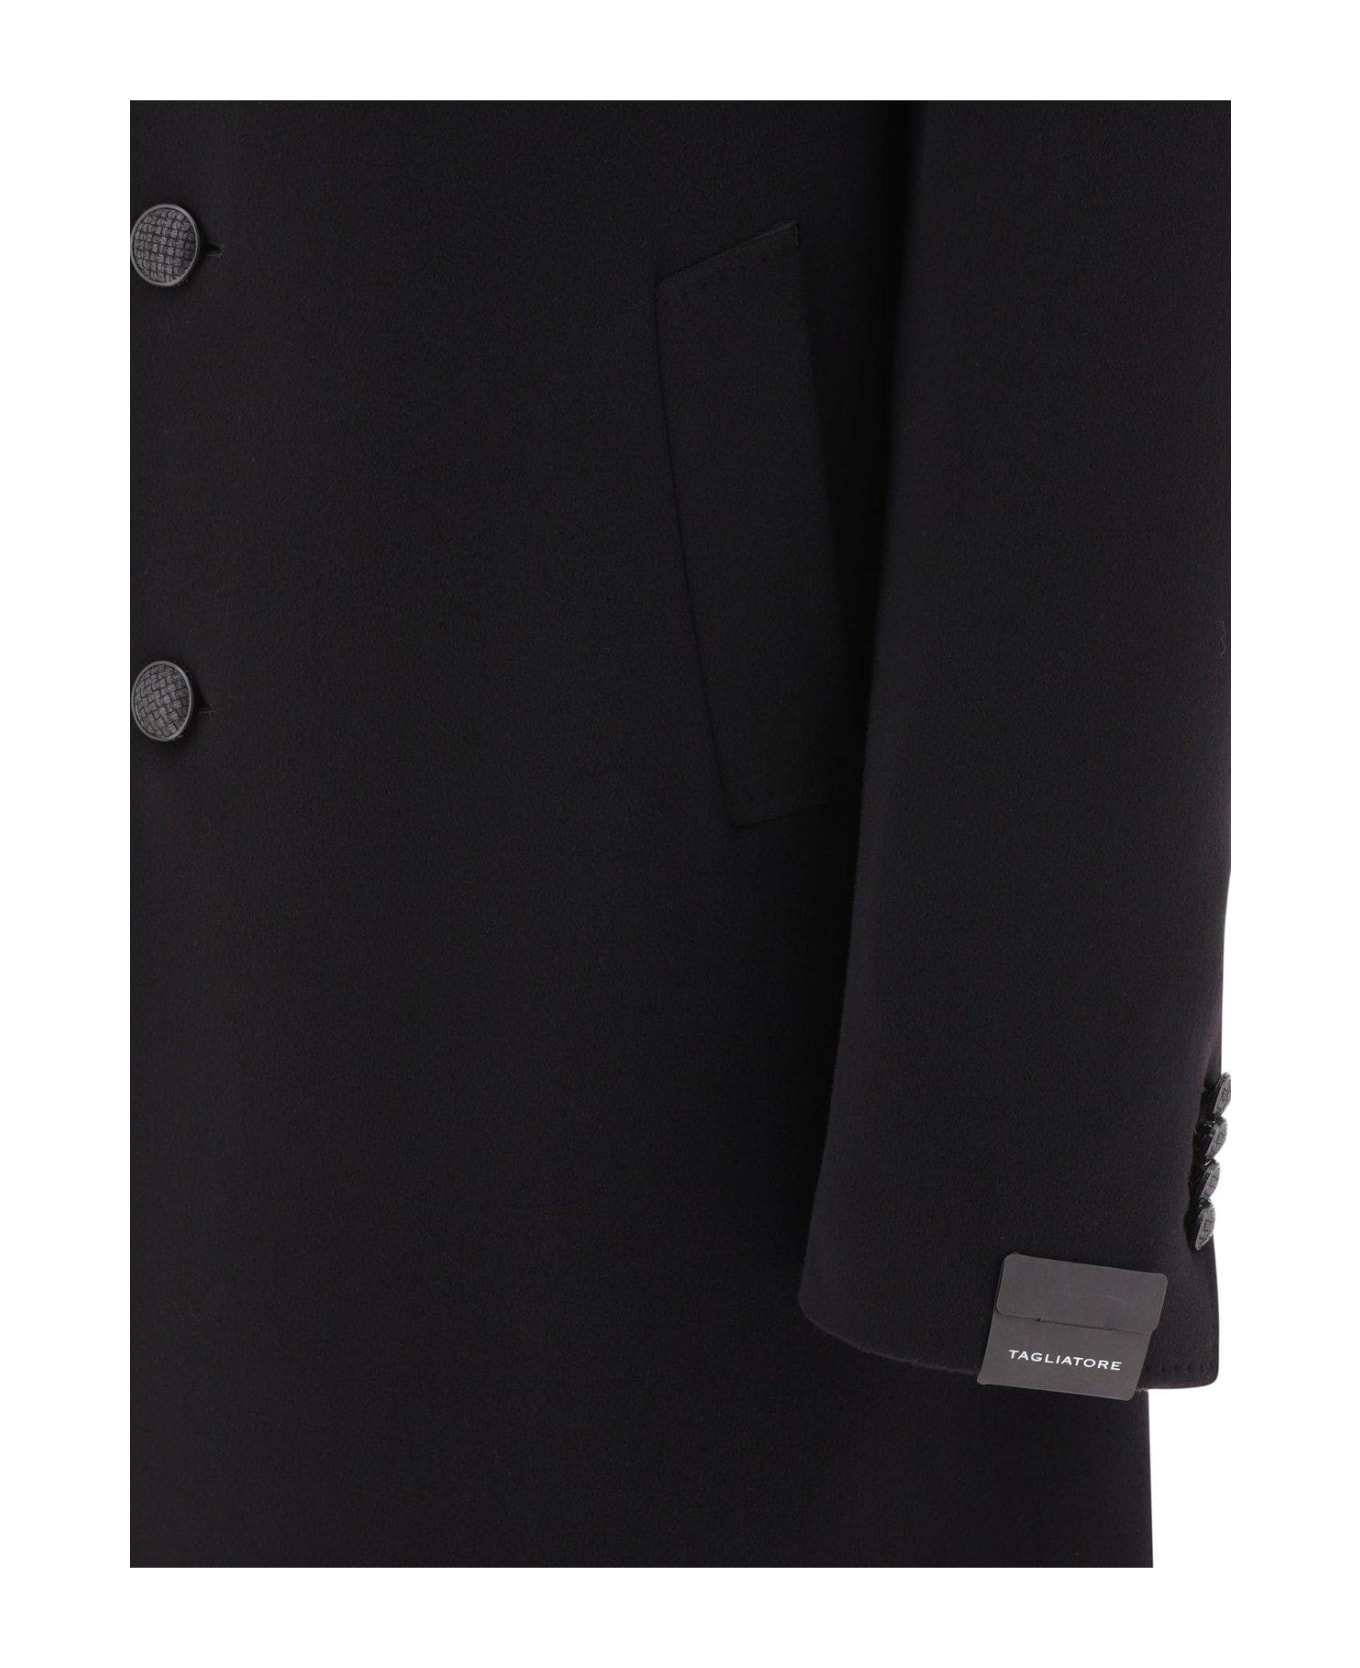 Tagliatore Single-breasted Tailored Blazer - Black コート